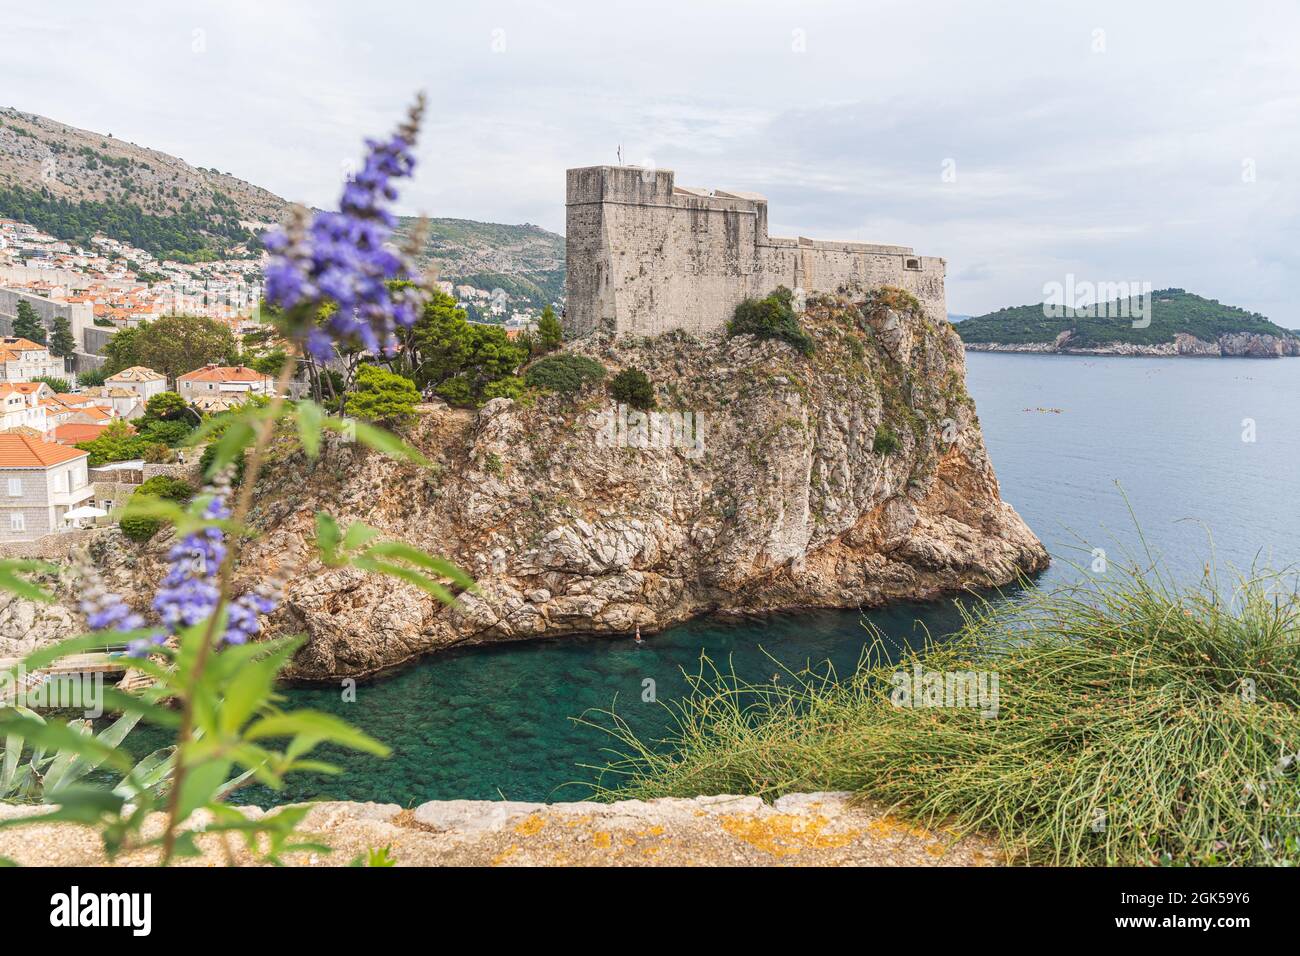 Dubrovnik ist eine Stadt in Kroatien an der Adria. Es ist bekannt für seine Altstadt, die als Kings Landing aus der TV-Serie Game of Thrones bekannt ist. Stockfoto